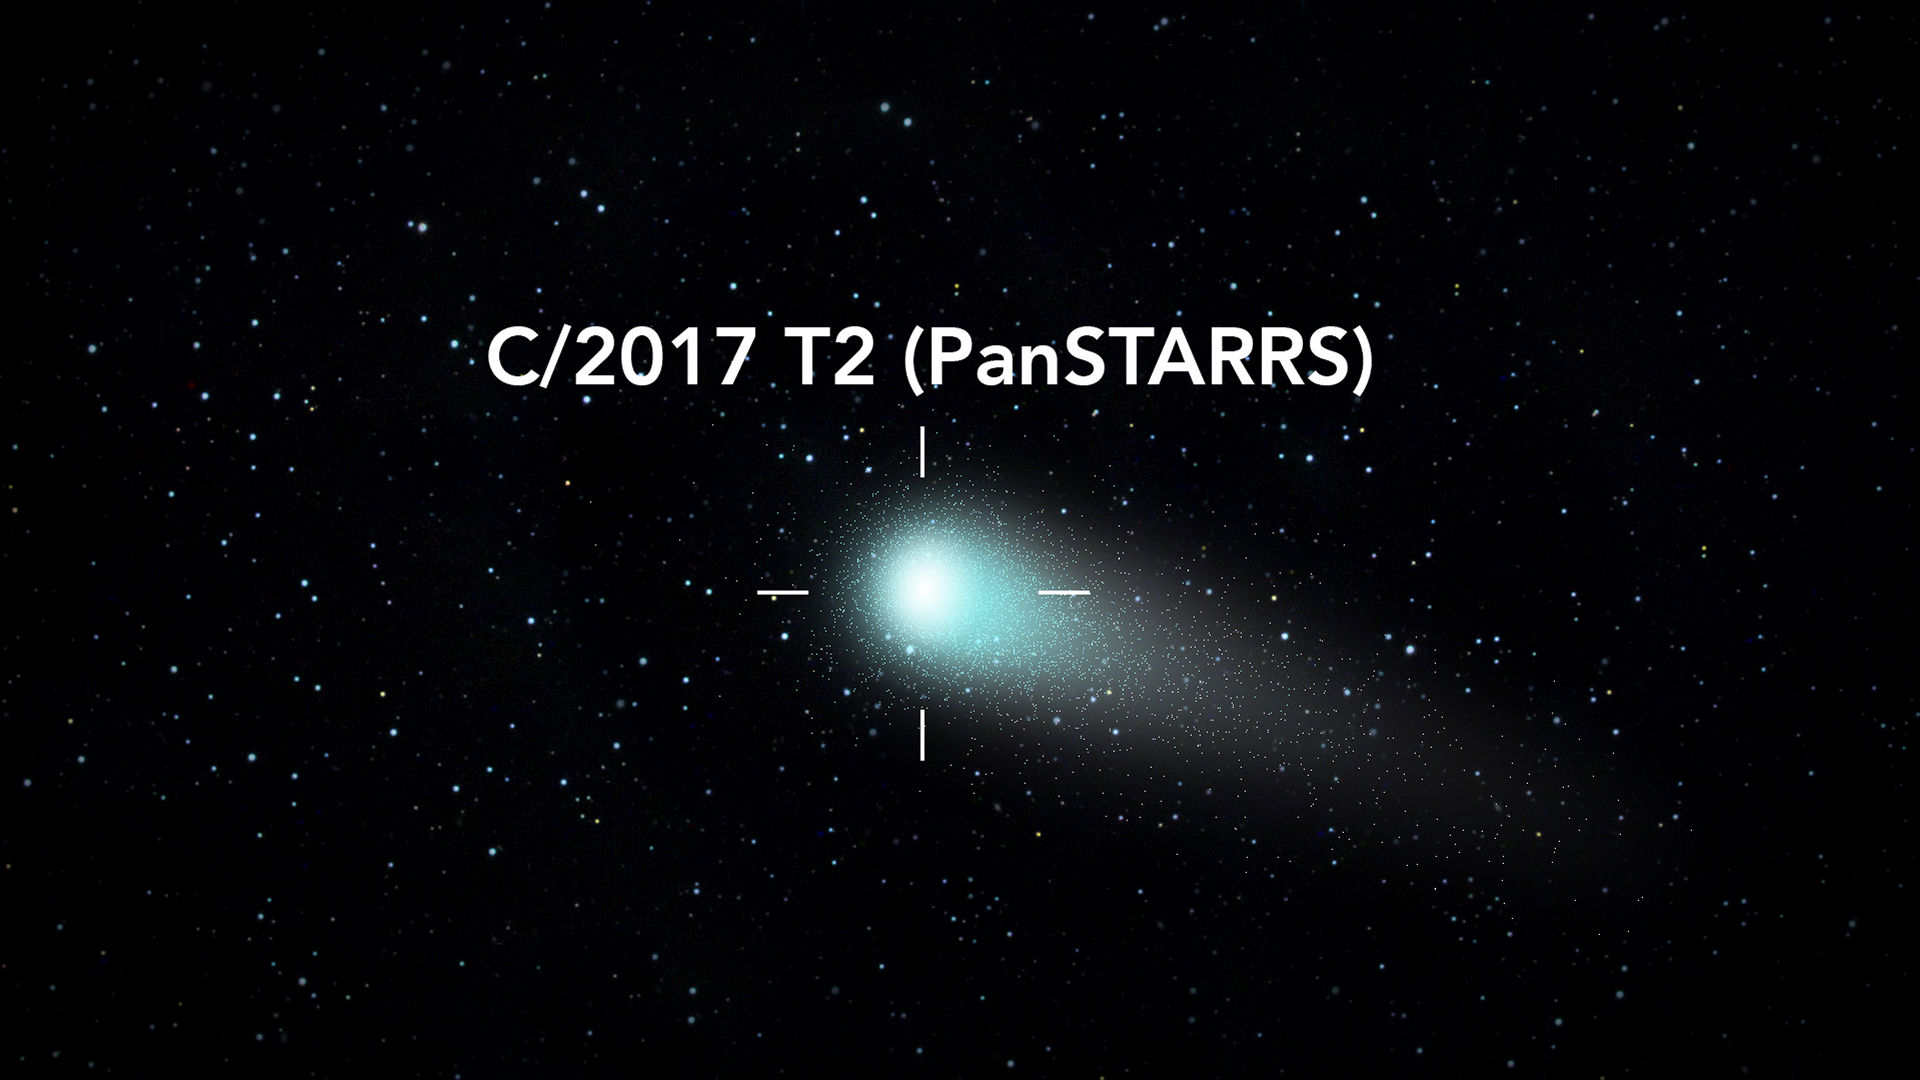 Spot Comet C/2017 T2 (PanSTARRS) in the Sky